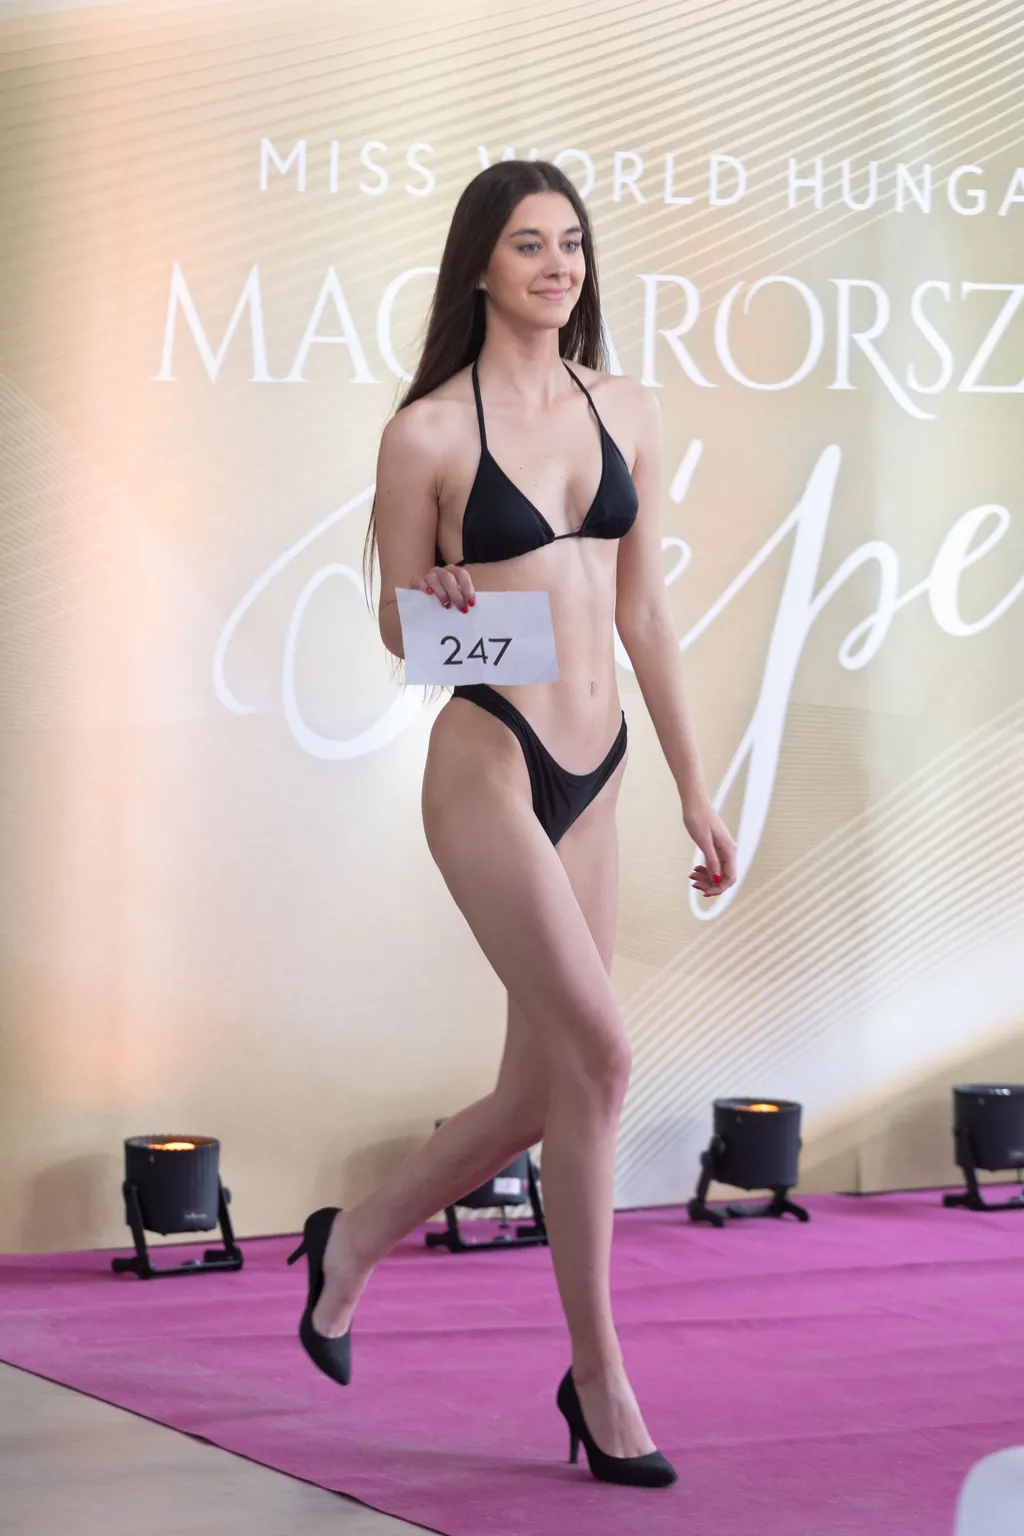 Magyarország Szépe, Miss World Hungary, Miss World magyarországi nemzeti versenye, sajtónyilvános casting, Lexington Loft, 2023.04.15. 